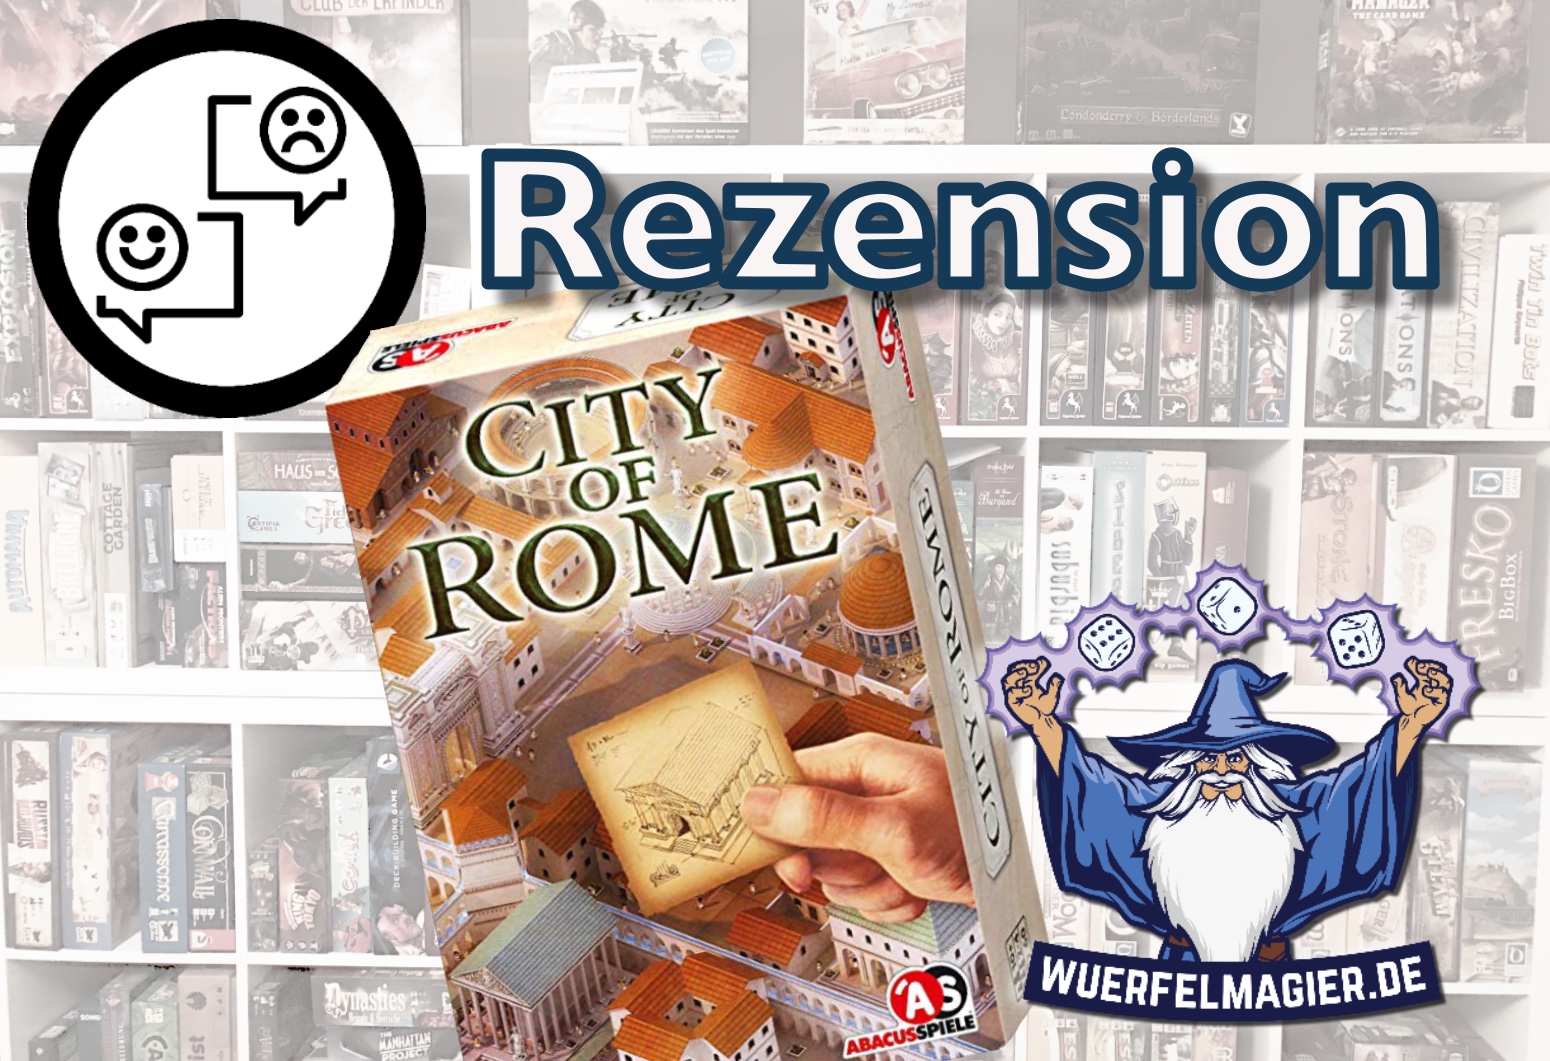 Rezension City of Rome Abacus Spiele Wuerfelmagier Würfelmagier